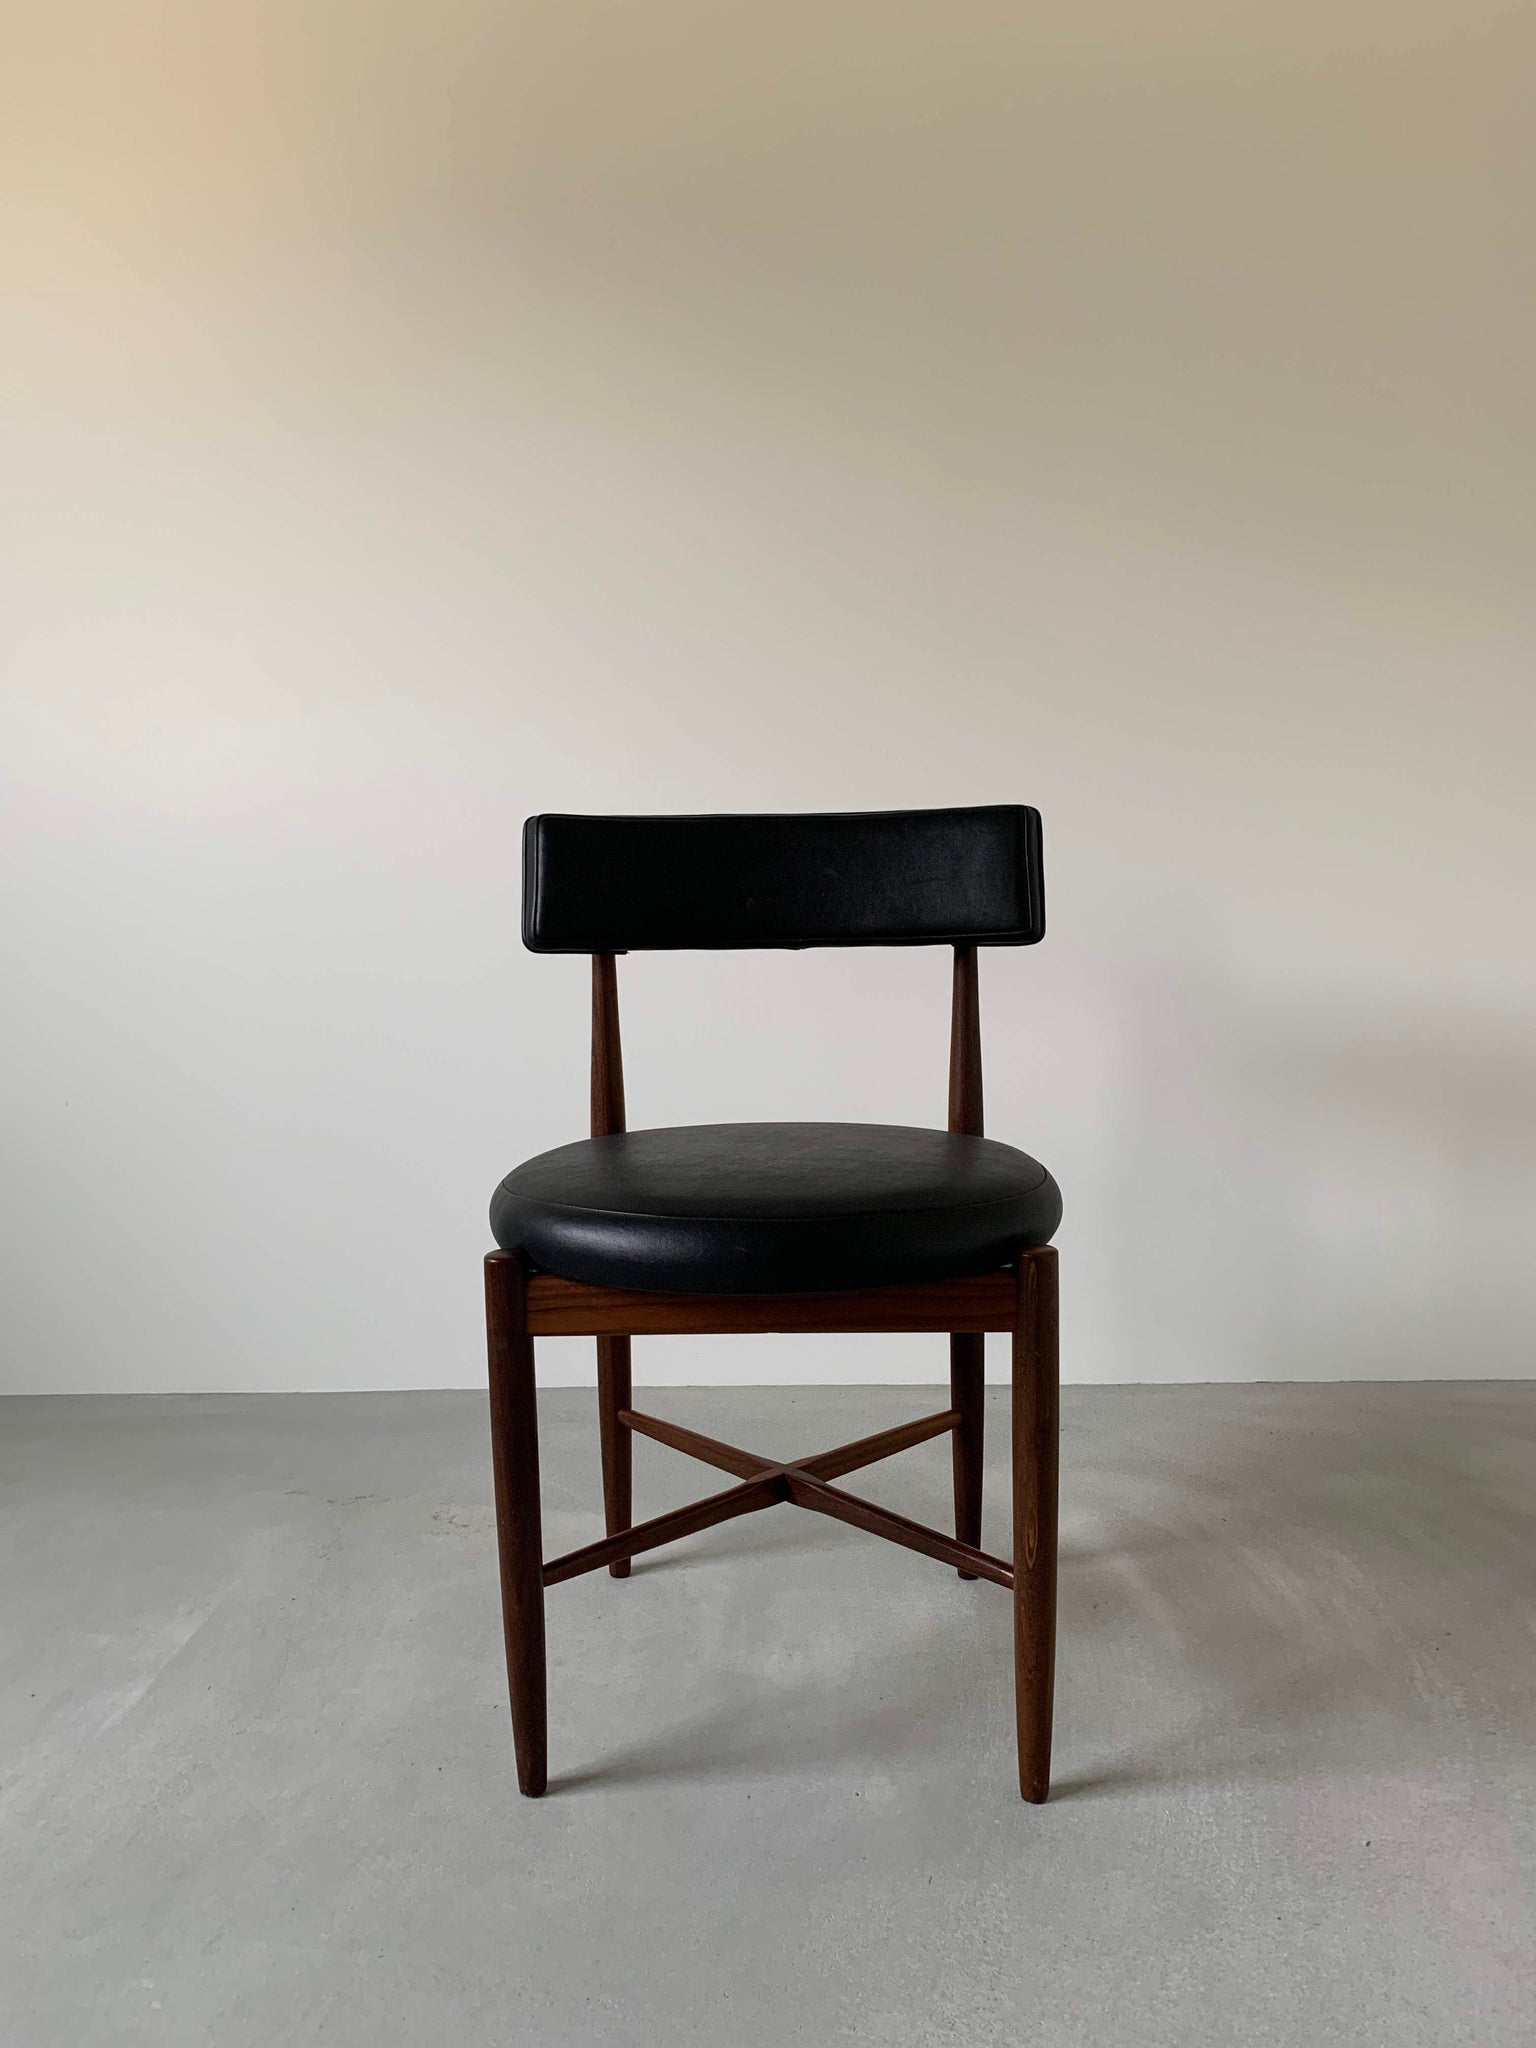 ジープラン フレスコ ダイニング チェア 4脚セット / g-plan fresco dining chairs set of 4 #0013